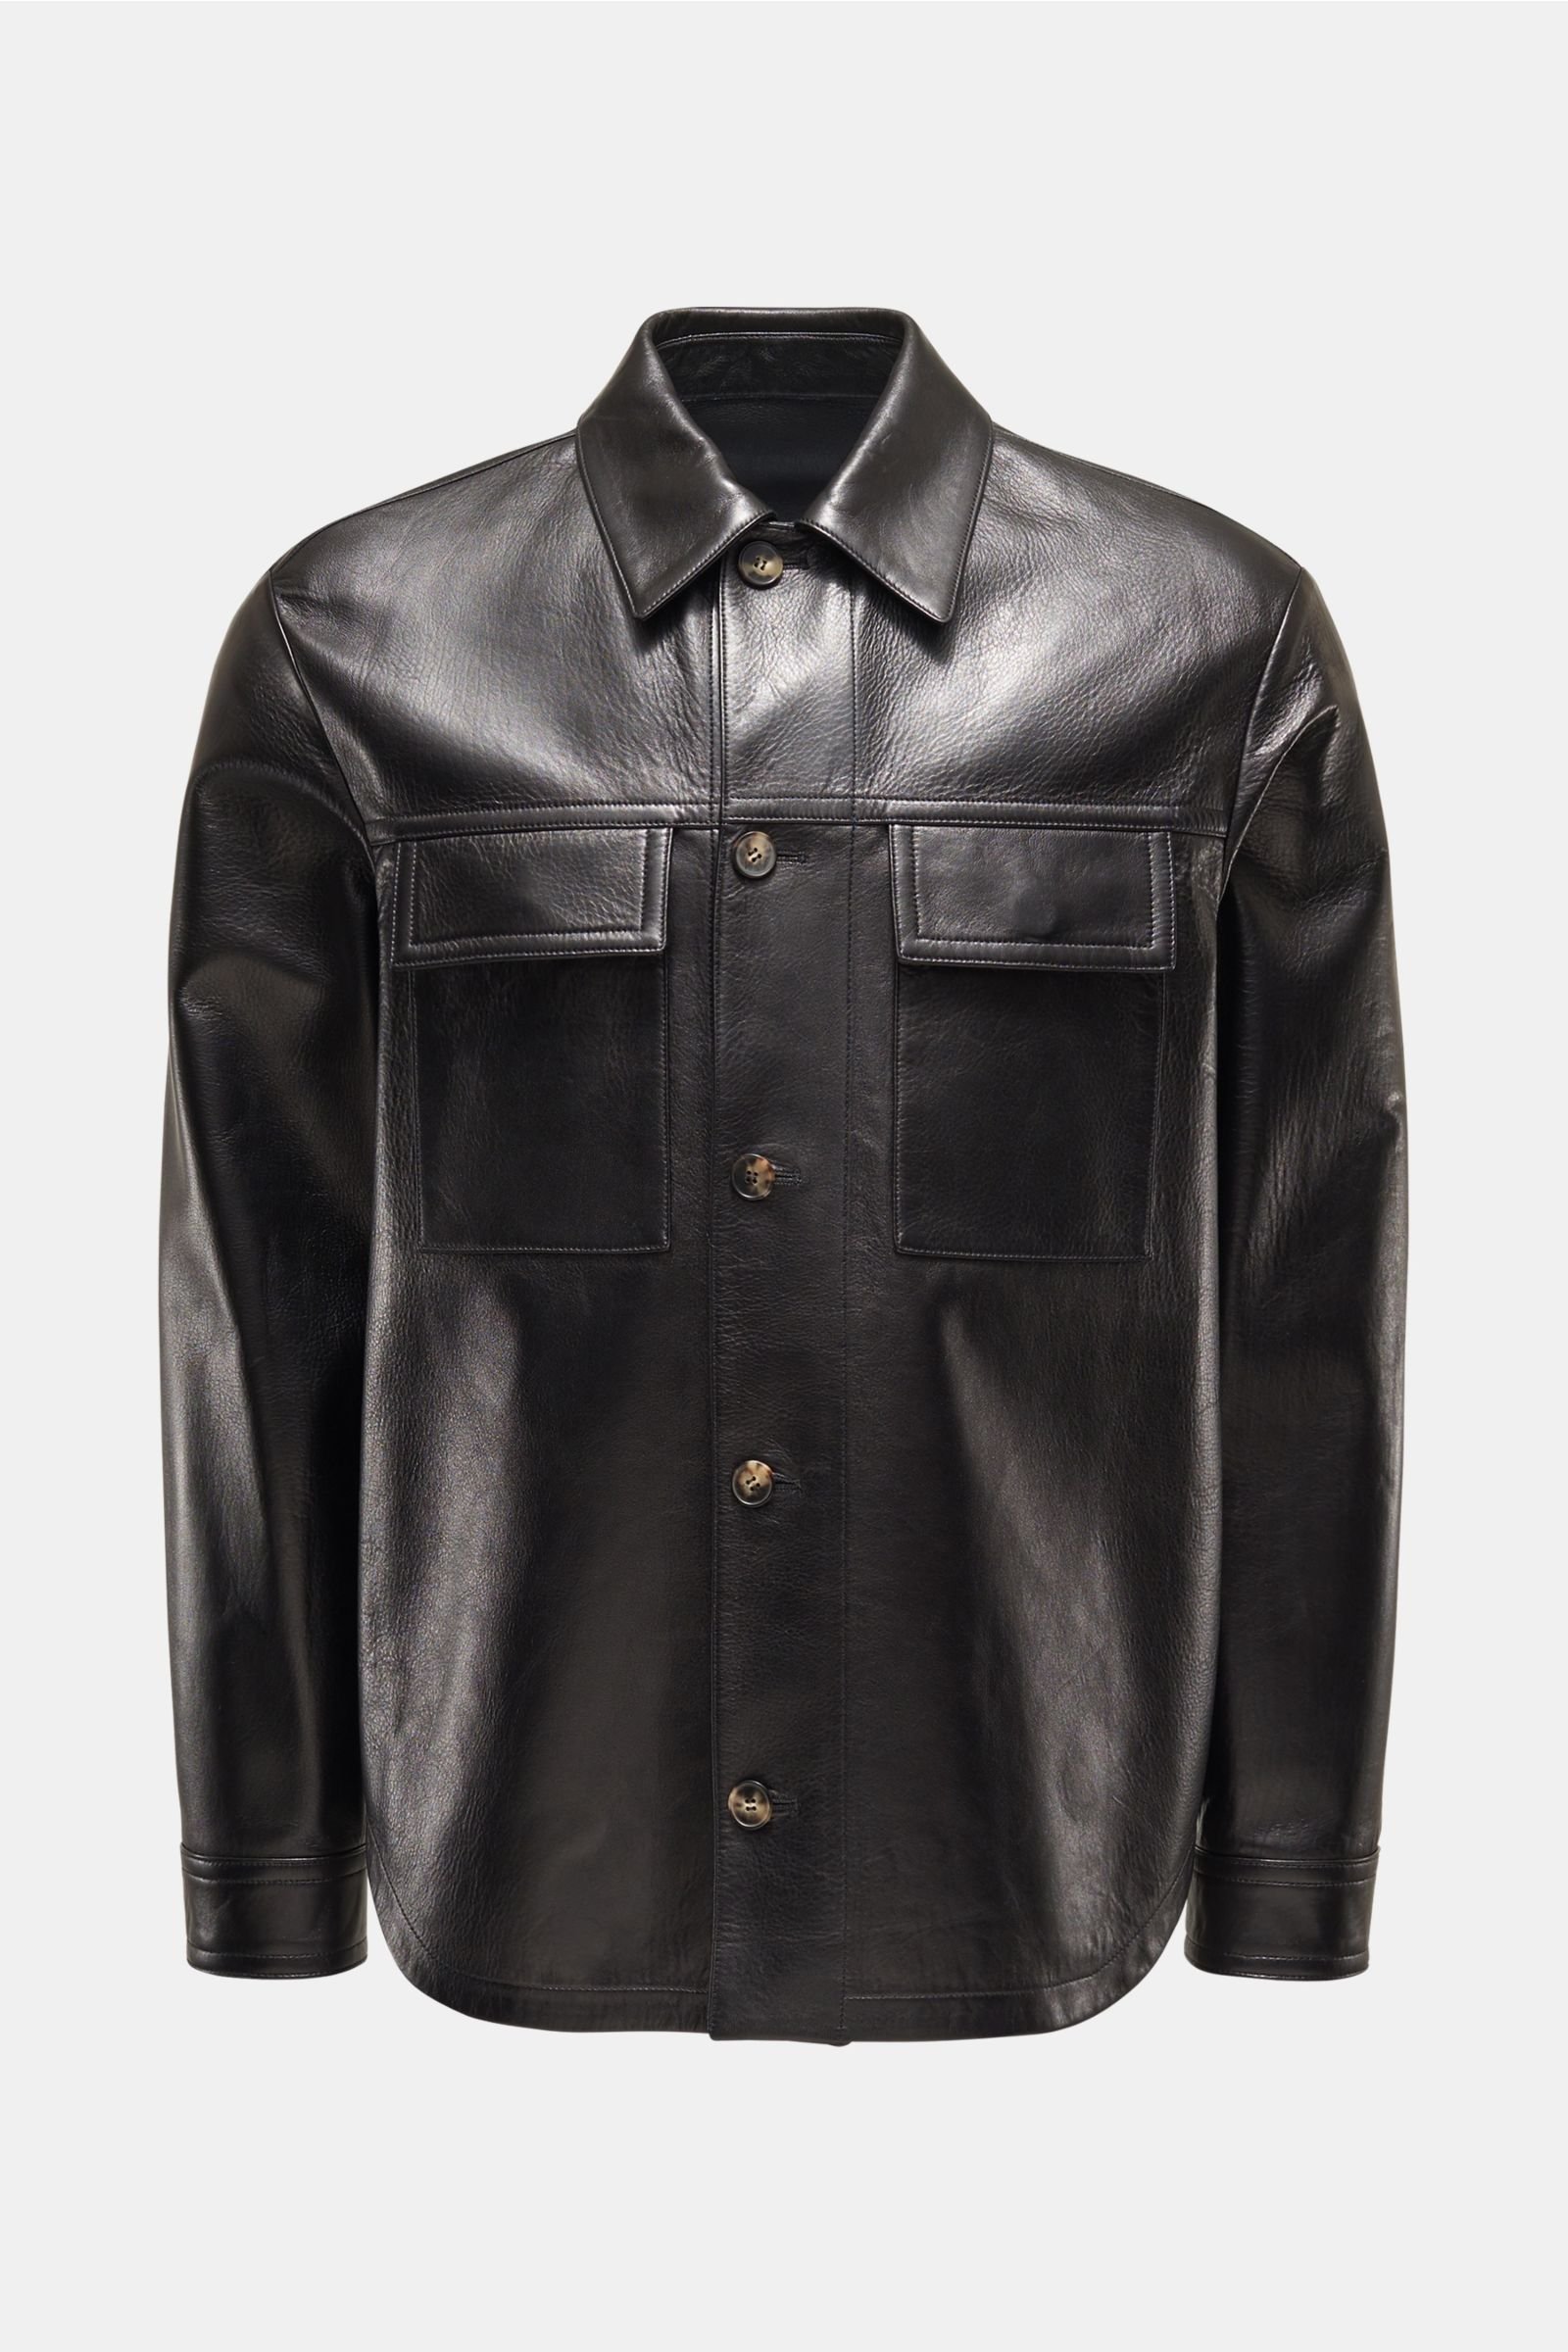 Leather jacket black